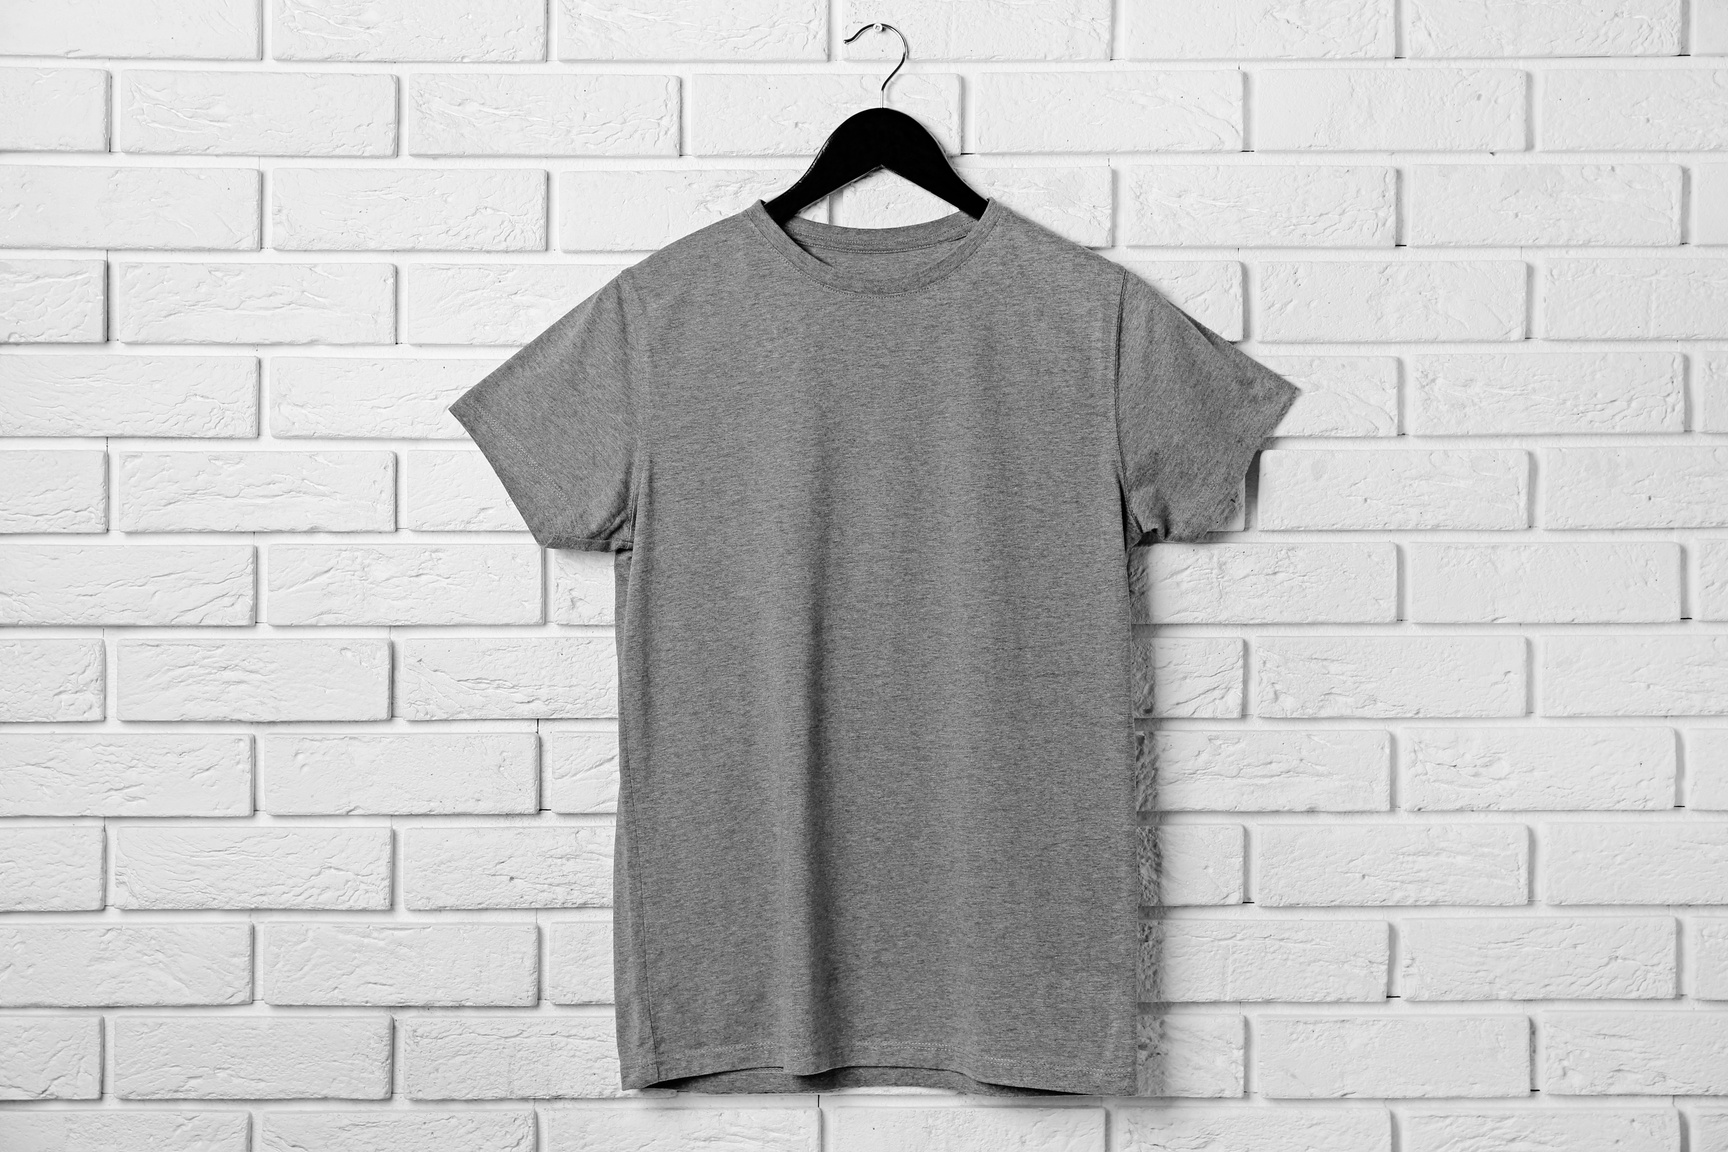 Blank Grey T-Shirt against Brick Wall